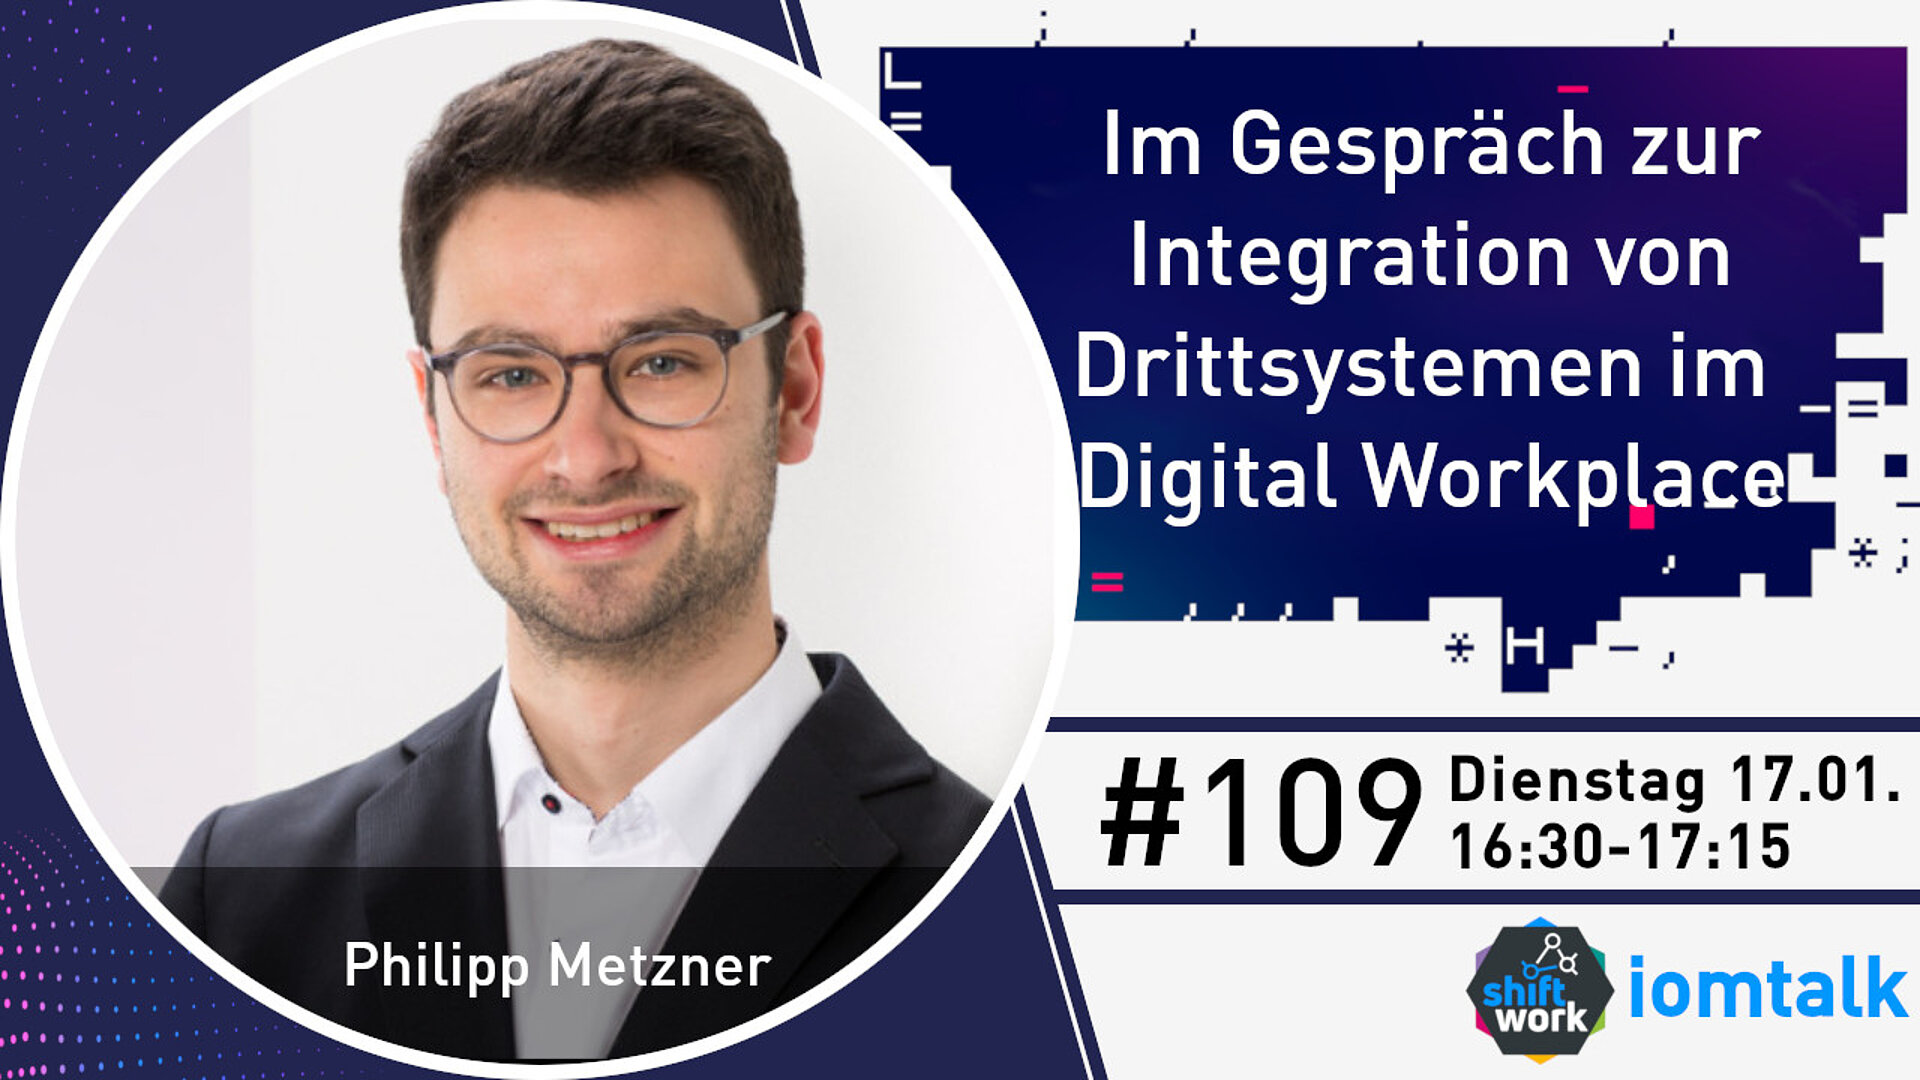 Im Gespräch mit Philipp Metzner zur Integration von Drittsystemen in den digitalen Arbeitsplatz